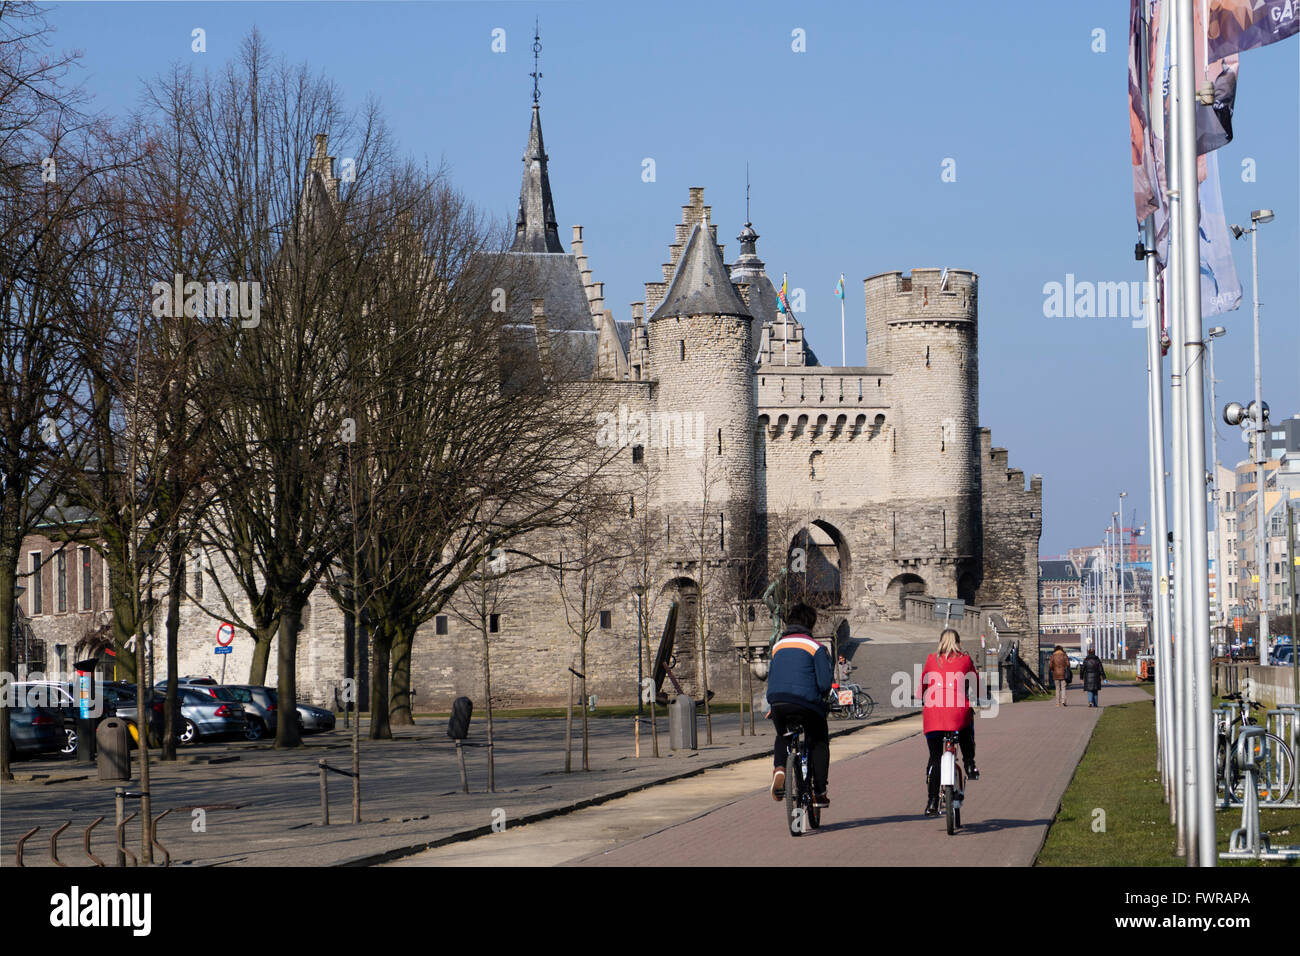 Steen castello sulle rive del fiume Schelde ad Anversa, in Belgio Foto Stock